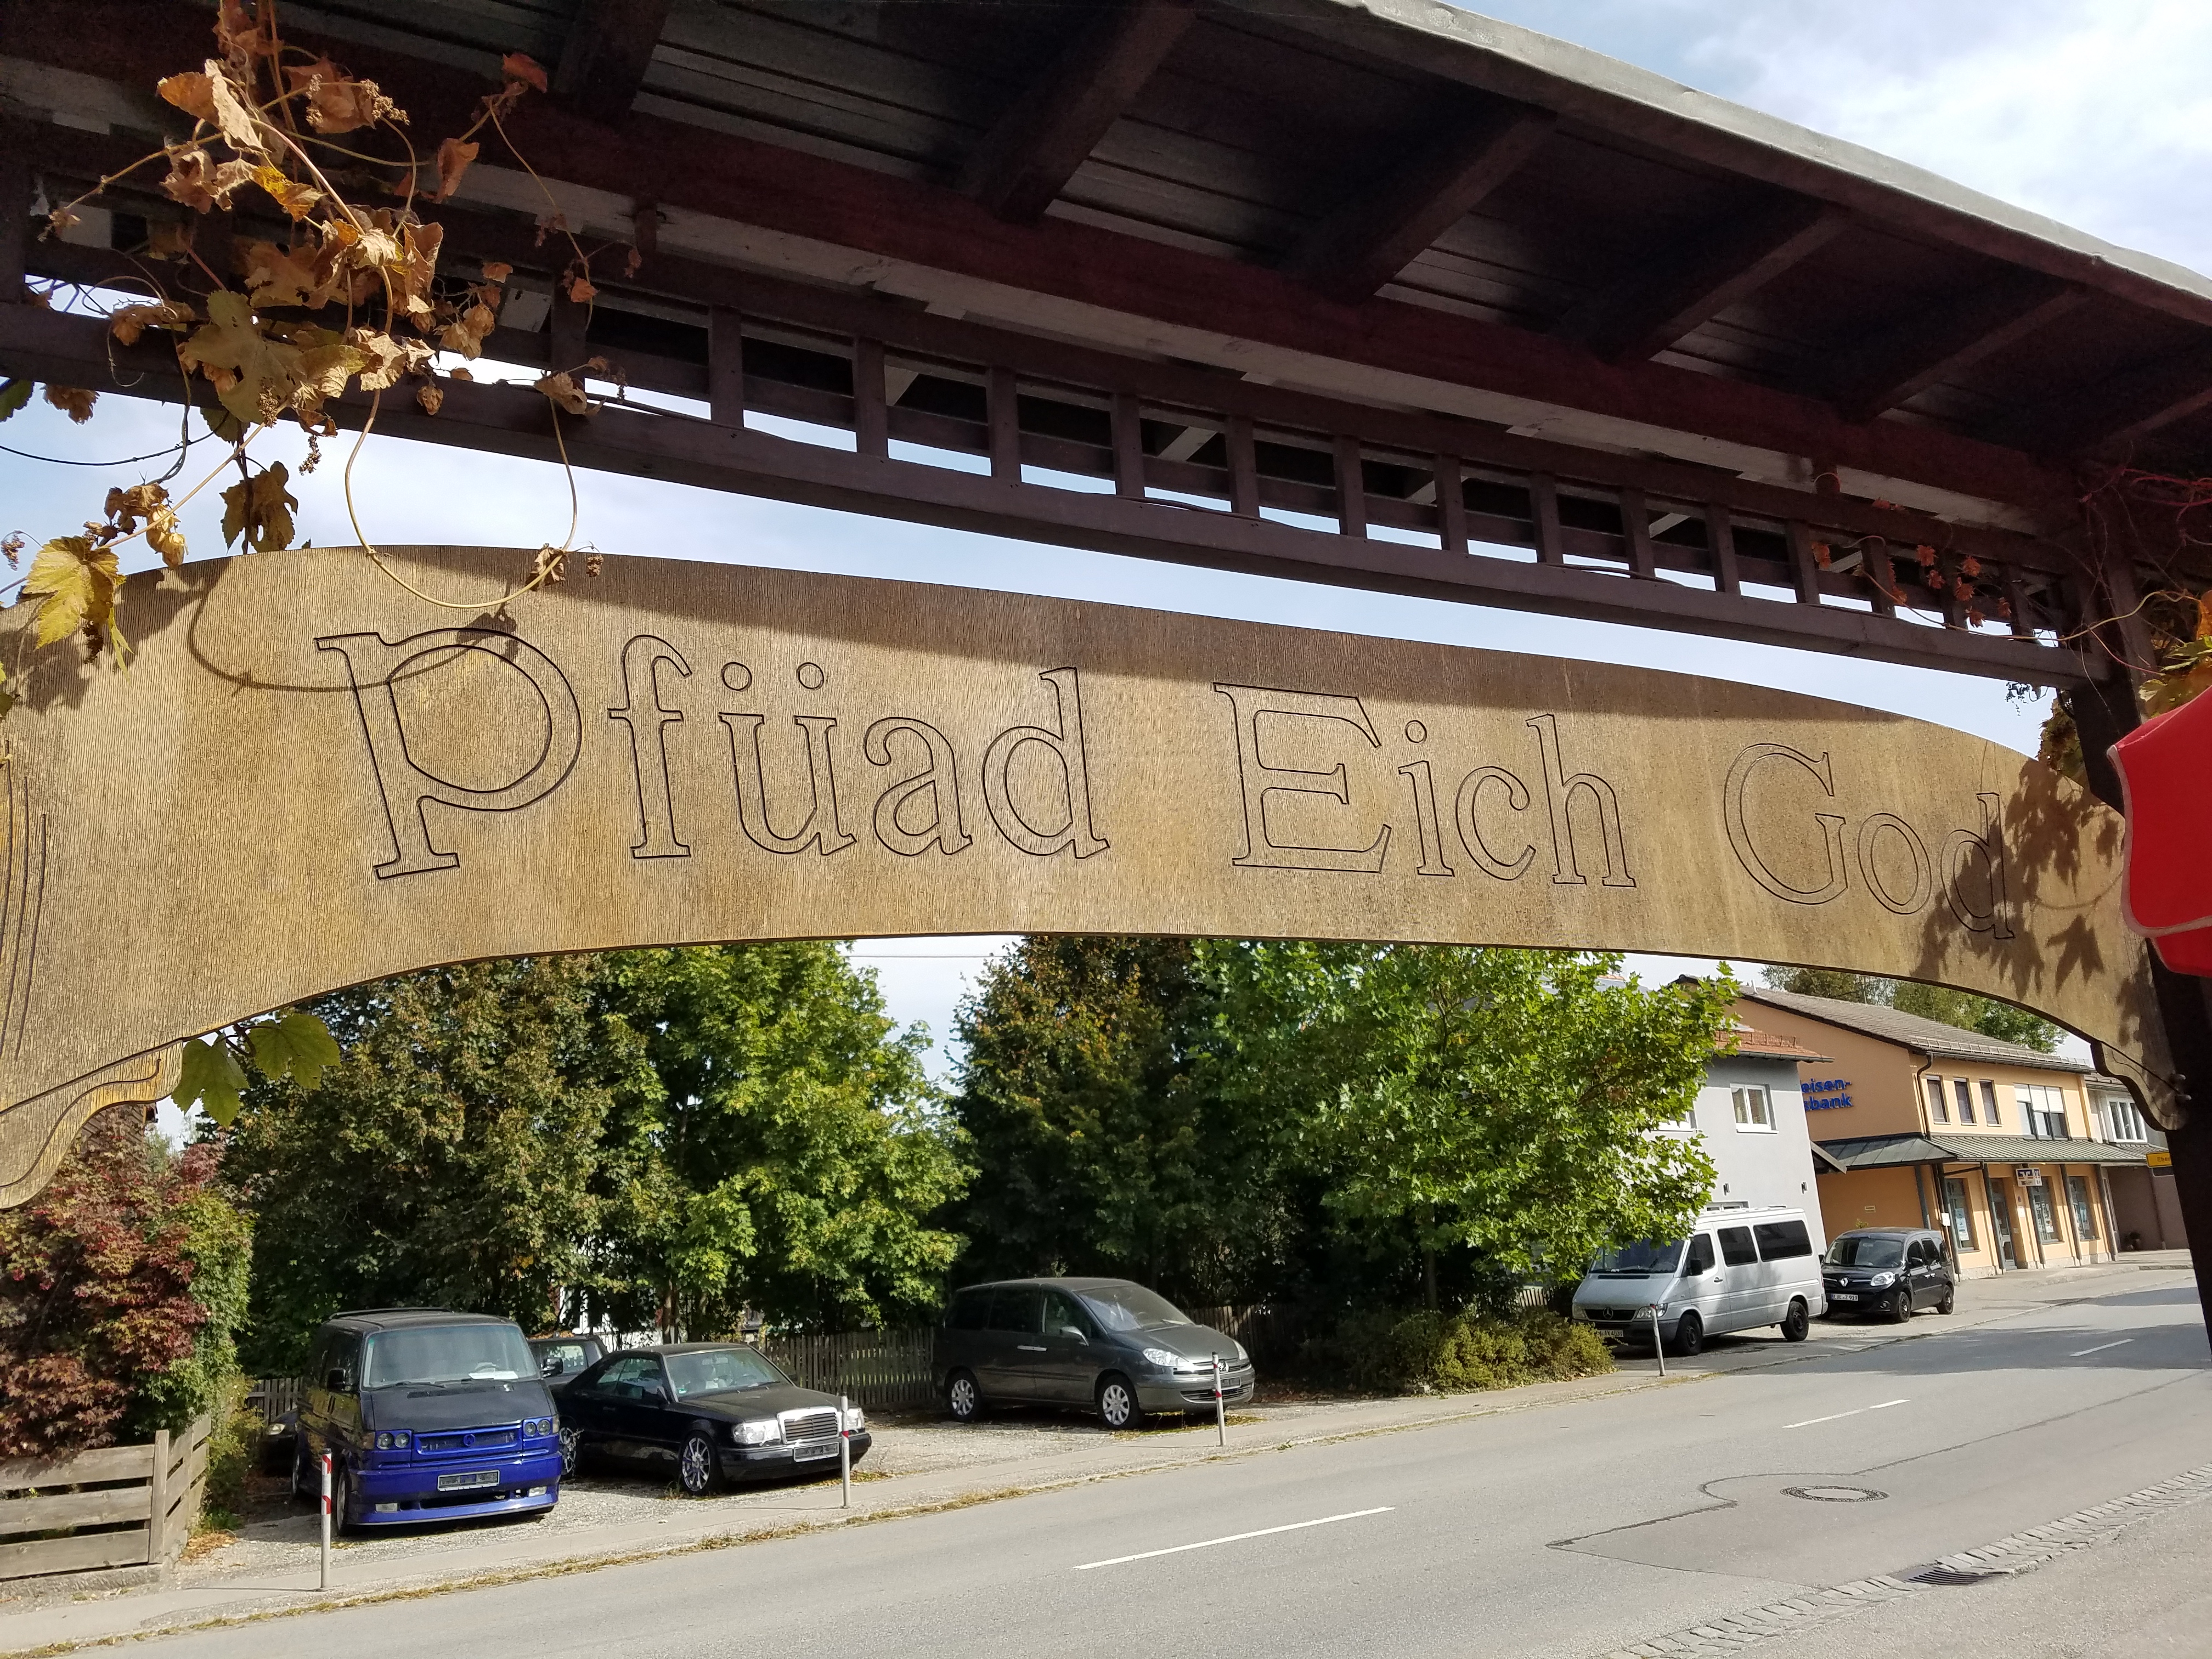 Beer Garden sign: "Pfüad Eich God"